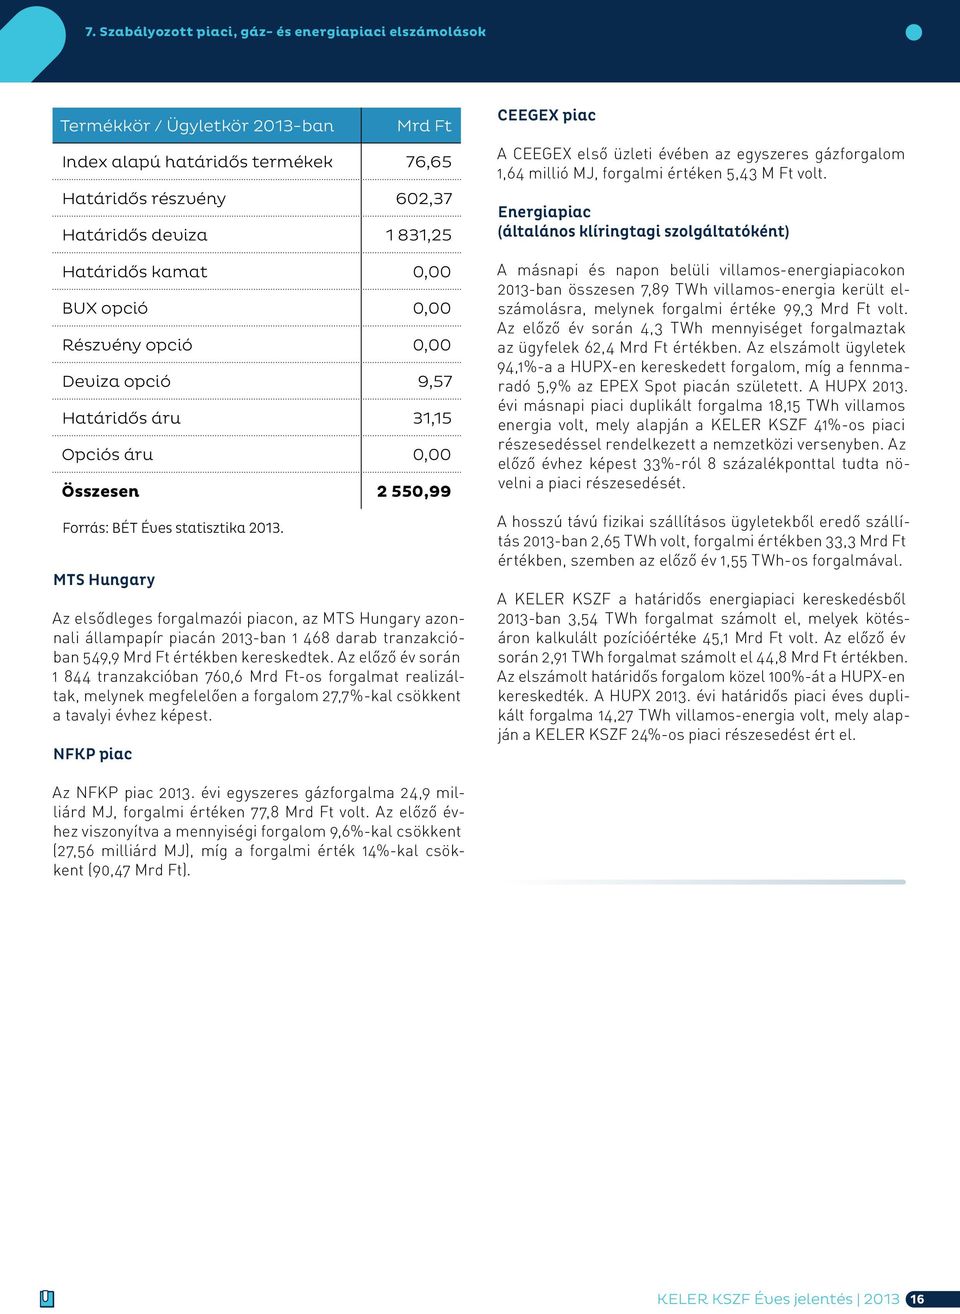 MTS Hungary Az elsődleges forgalmazói piacon, az MTS Hungary azonnali állampapír piacán 2013-ban 1 468 darab tranzakcióban 549,9 Mrd Ft értékben kereskedtek.